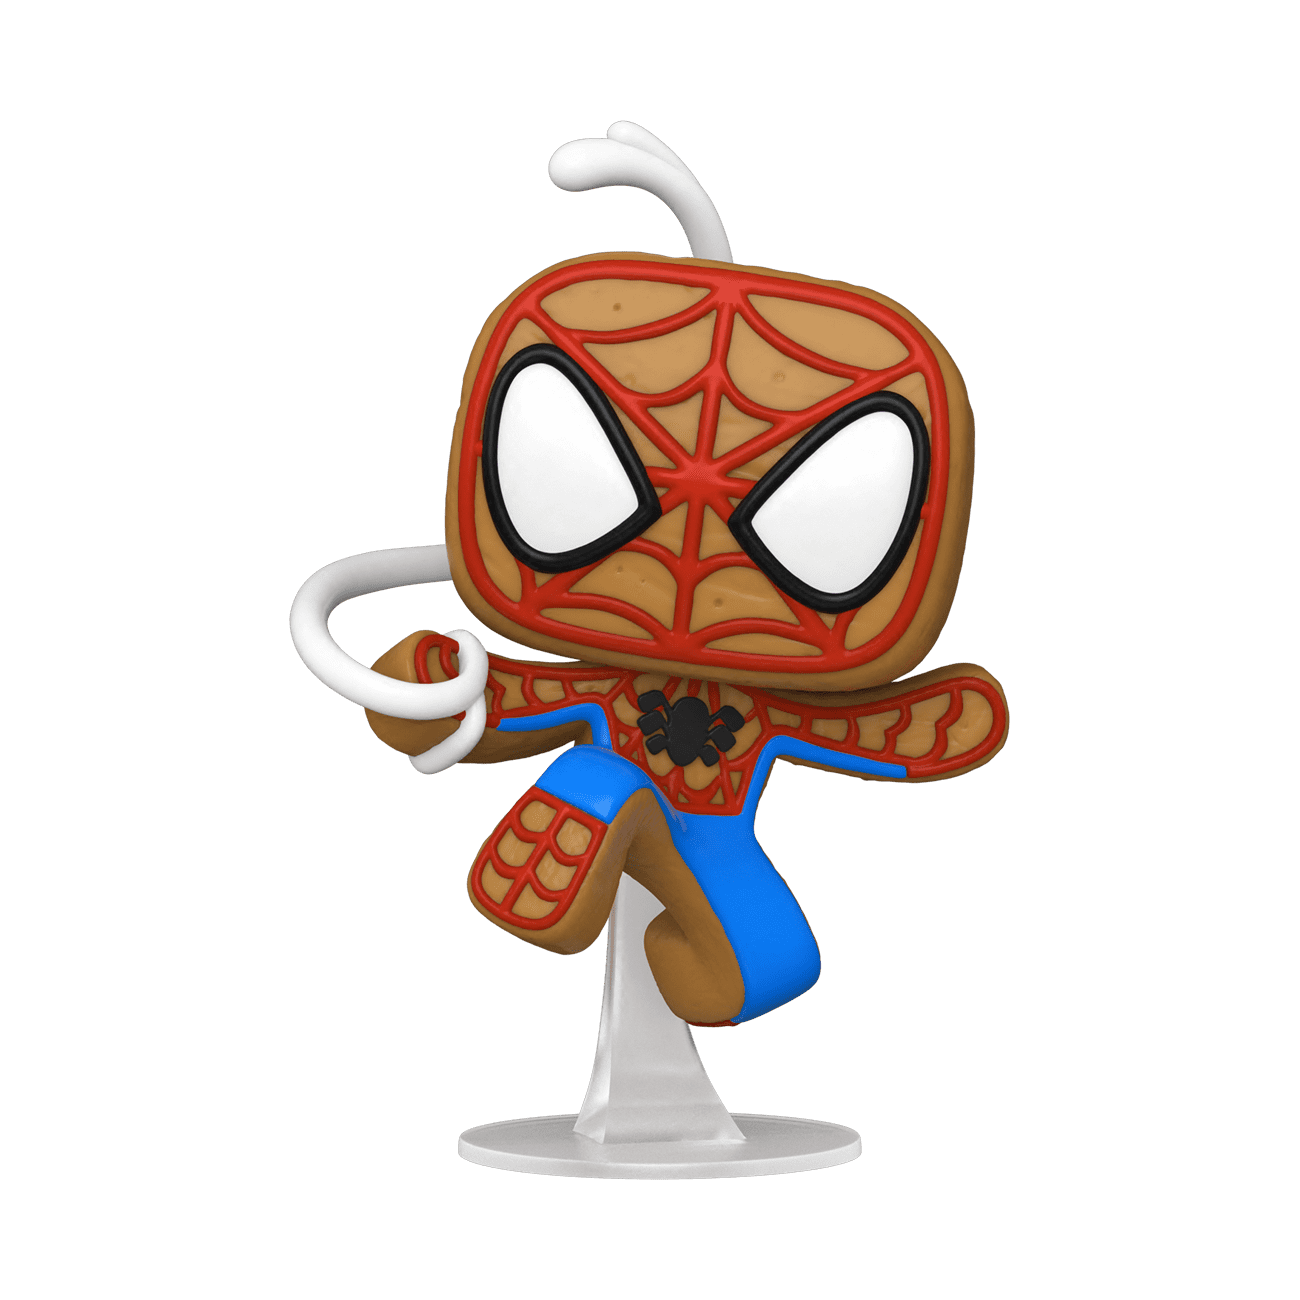 Funko POP! Marvel: Holiday Spider-Man 3.7-in Vinyl Bobblehead